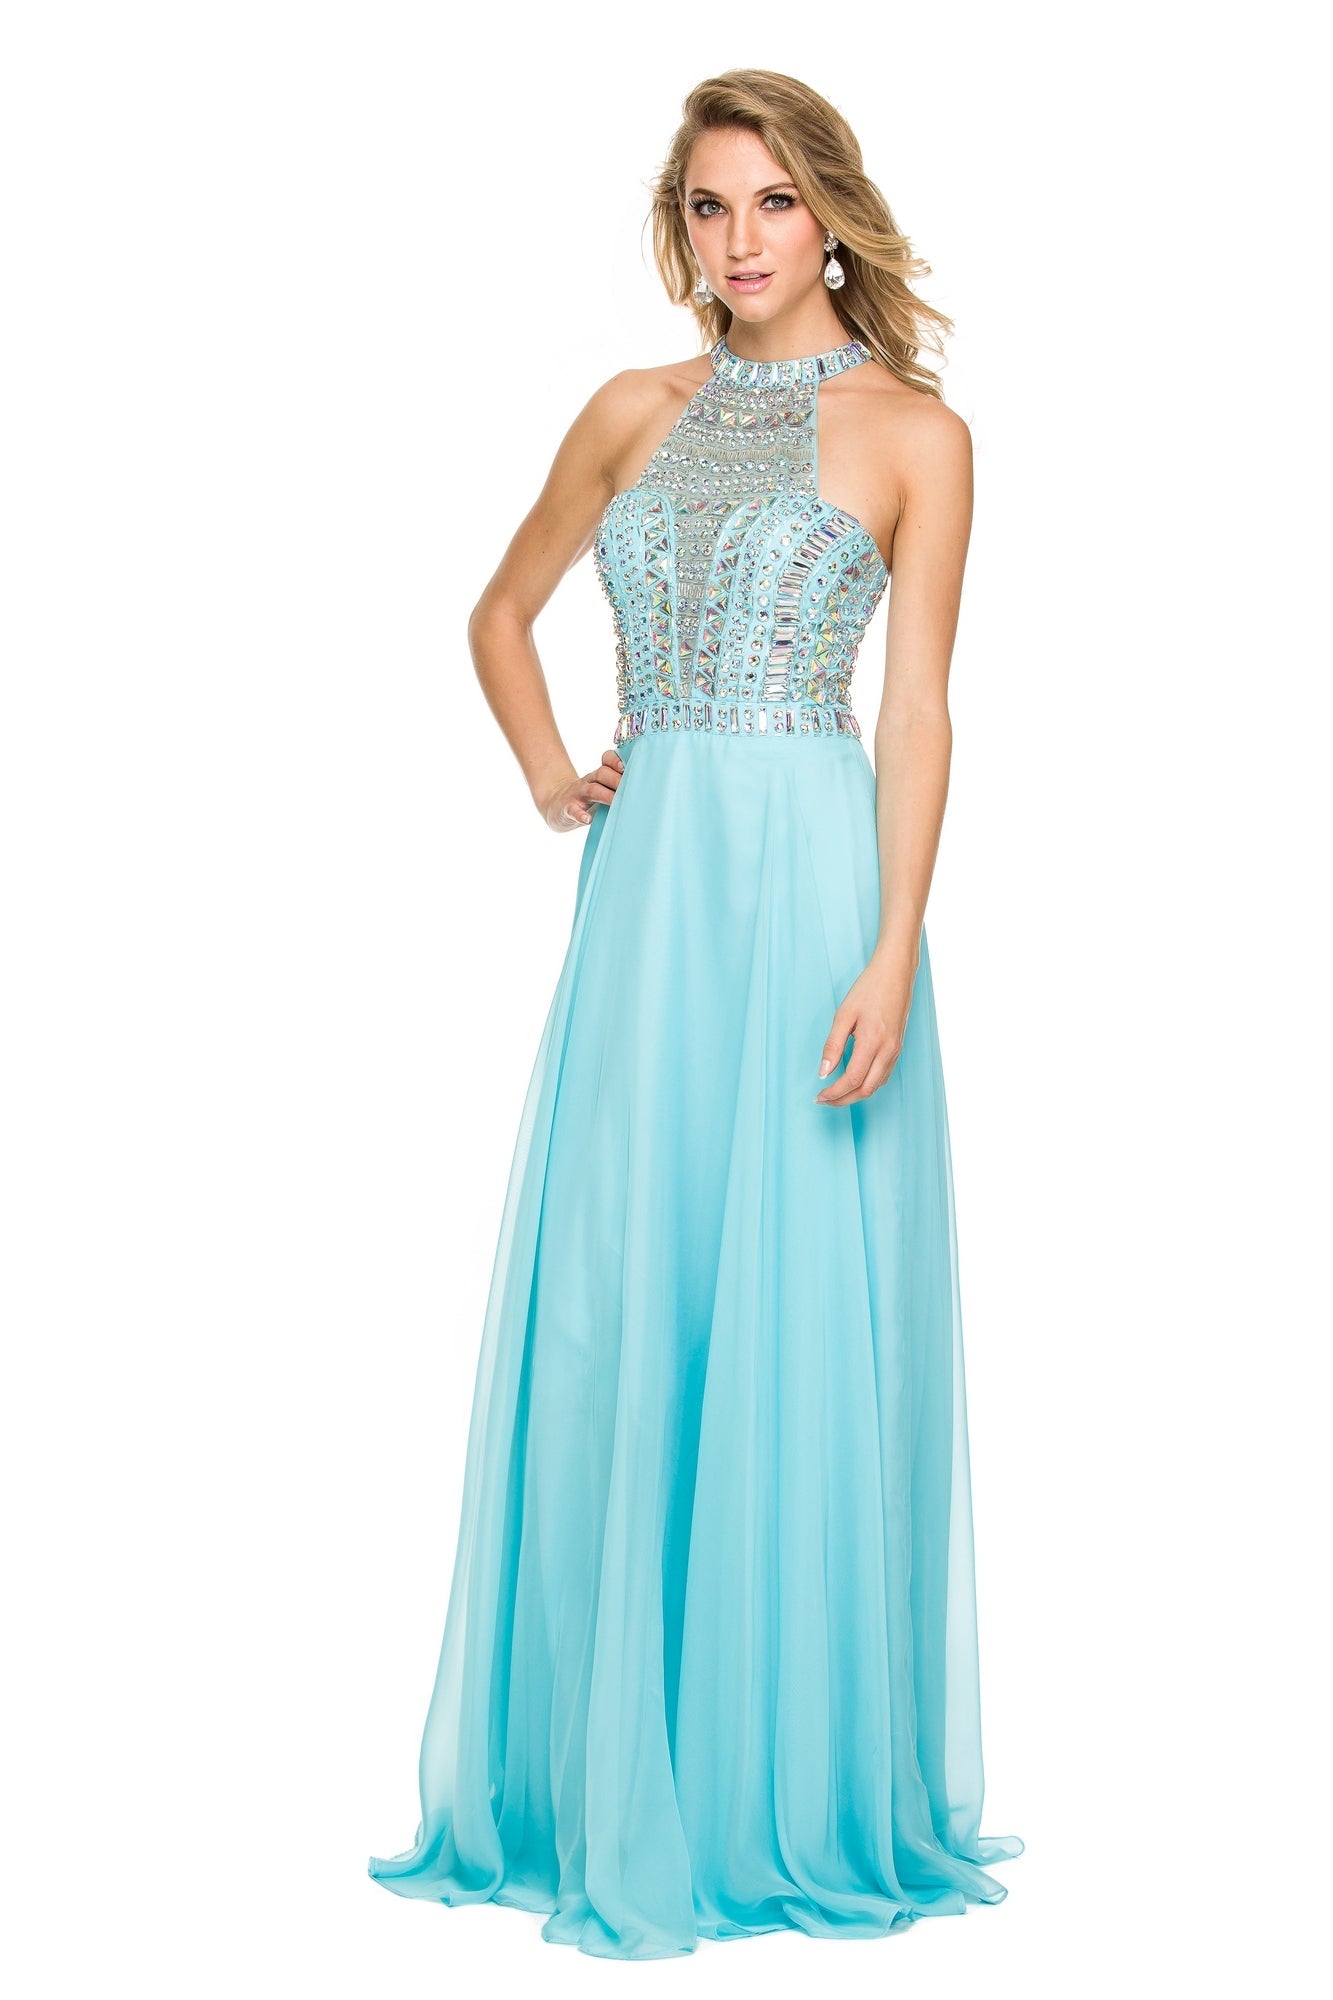 Aqua Blue Beaded High-Neck Long A-Line Prom Dress